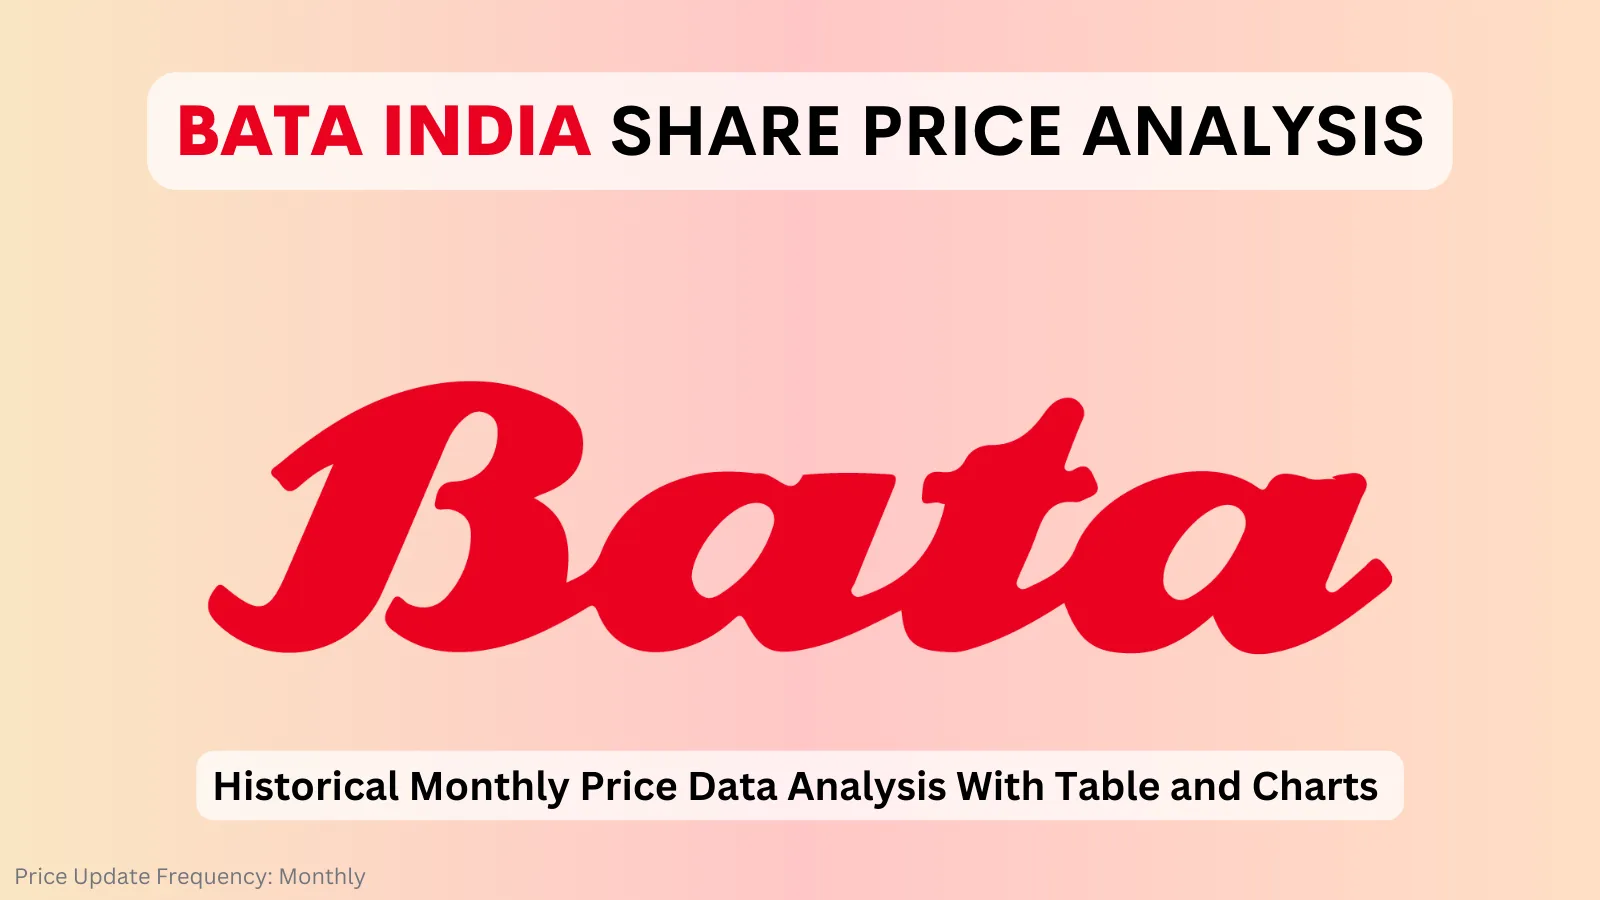 bata india share price analysis